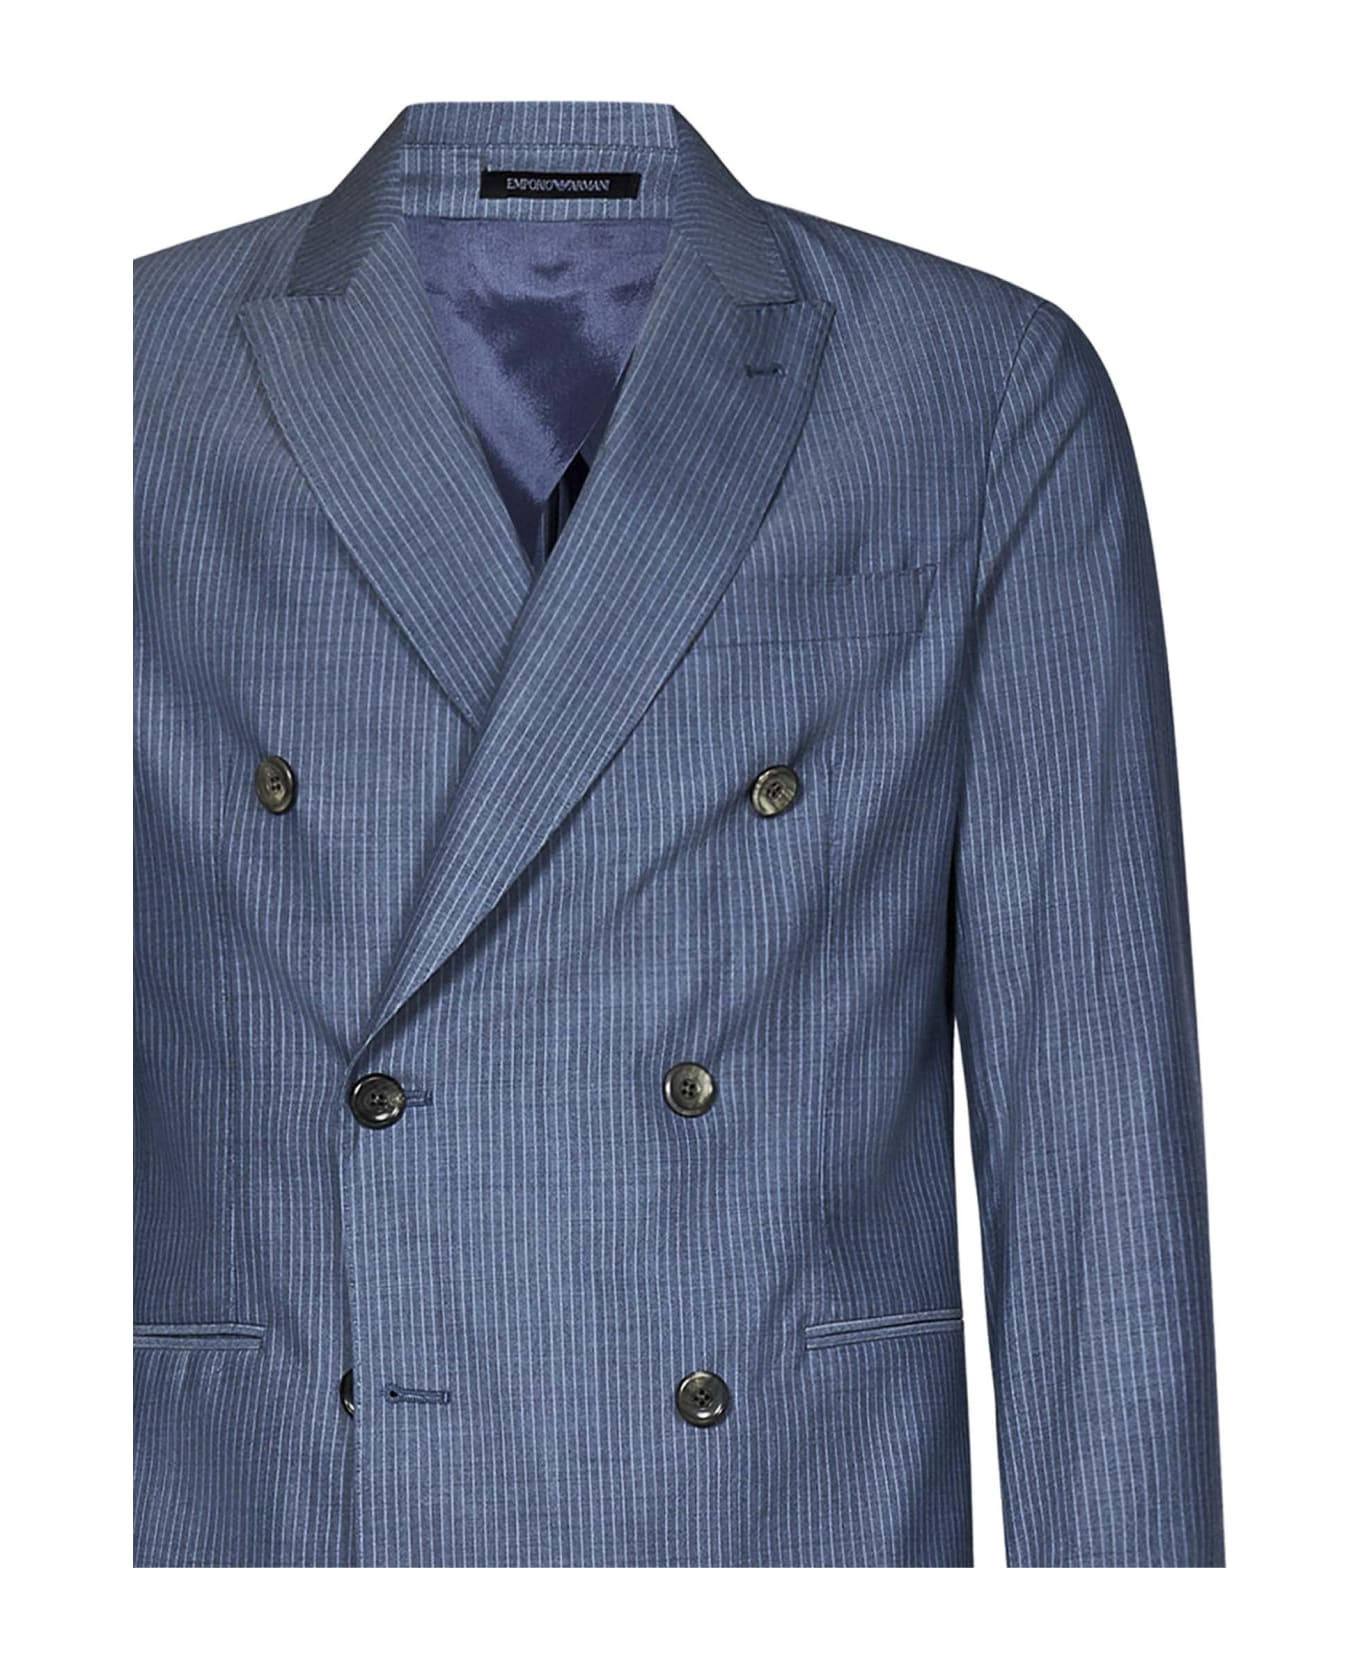 Emporio Armani Suit - Light blue